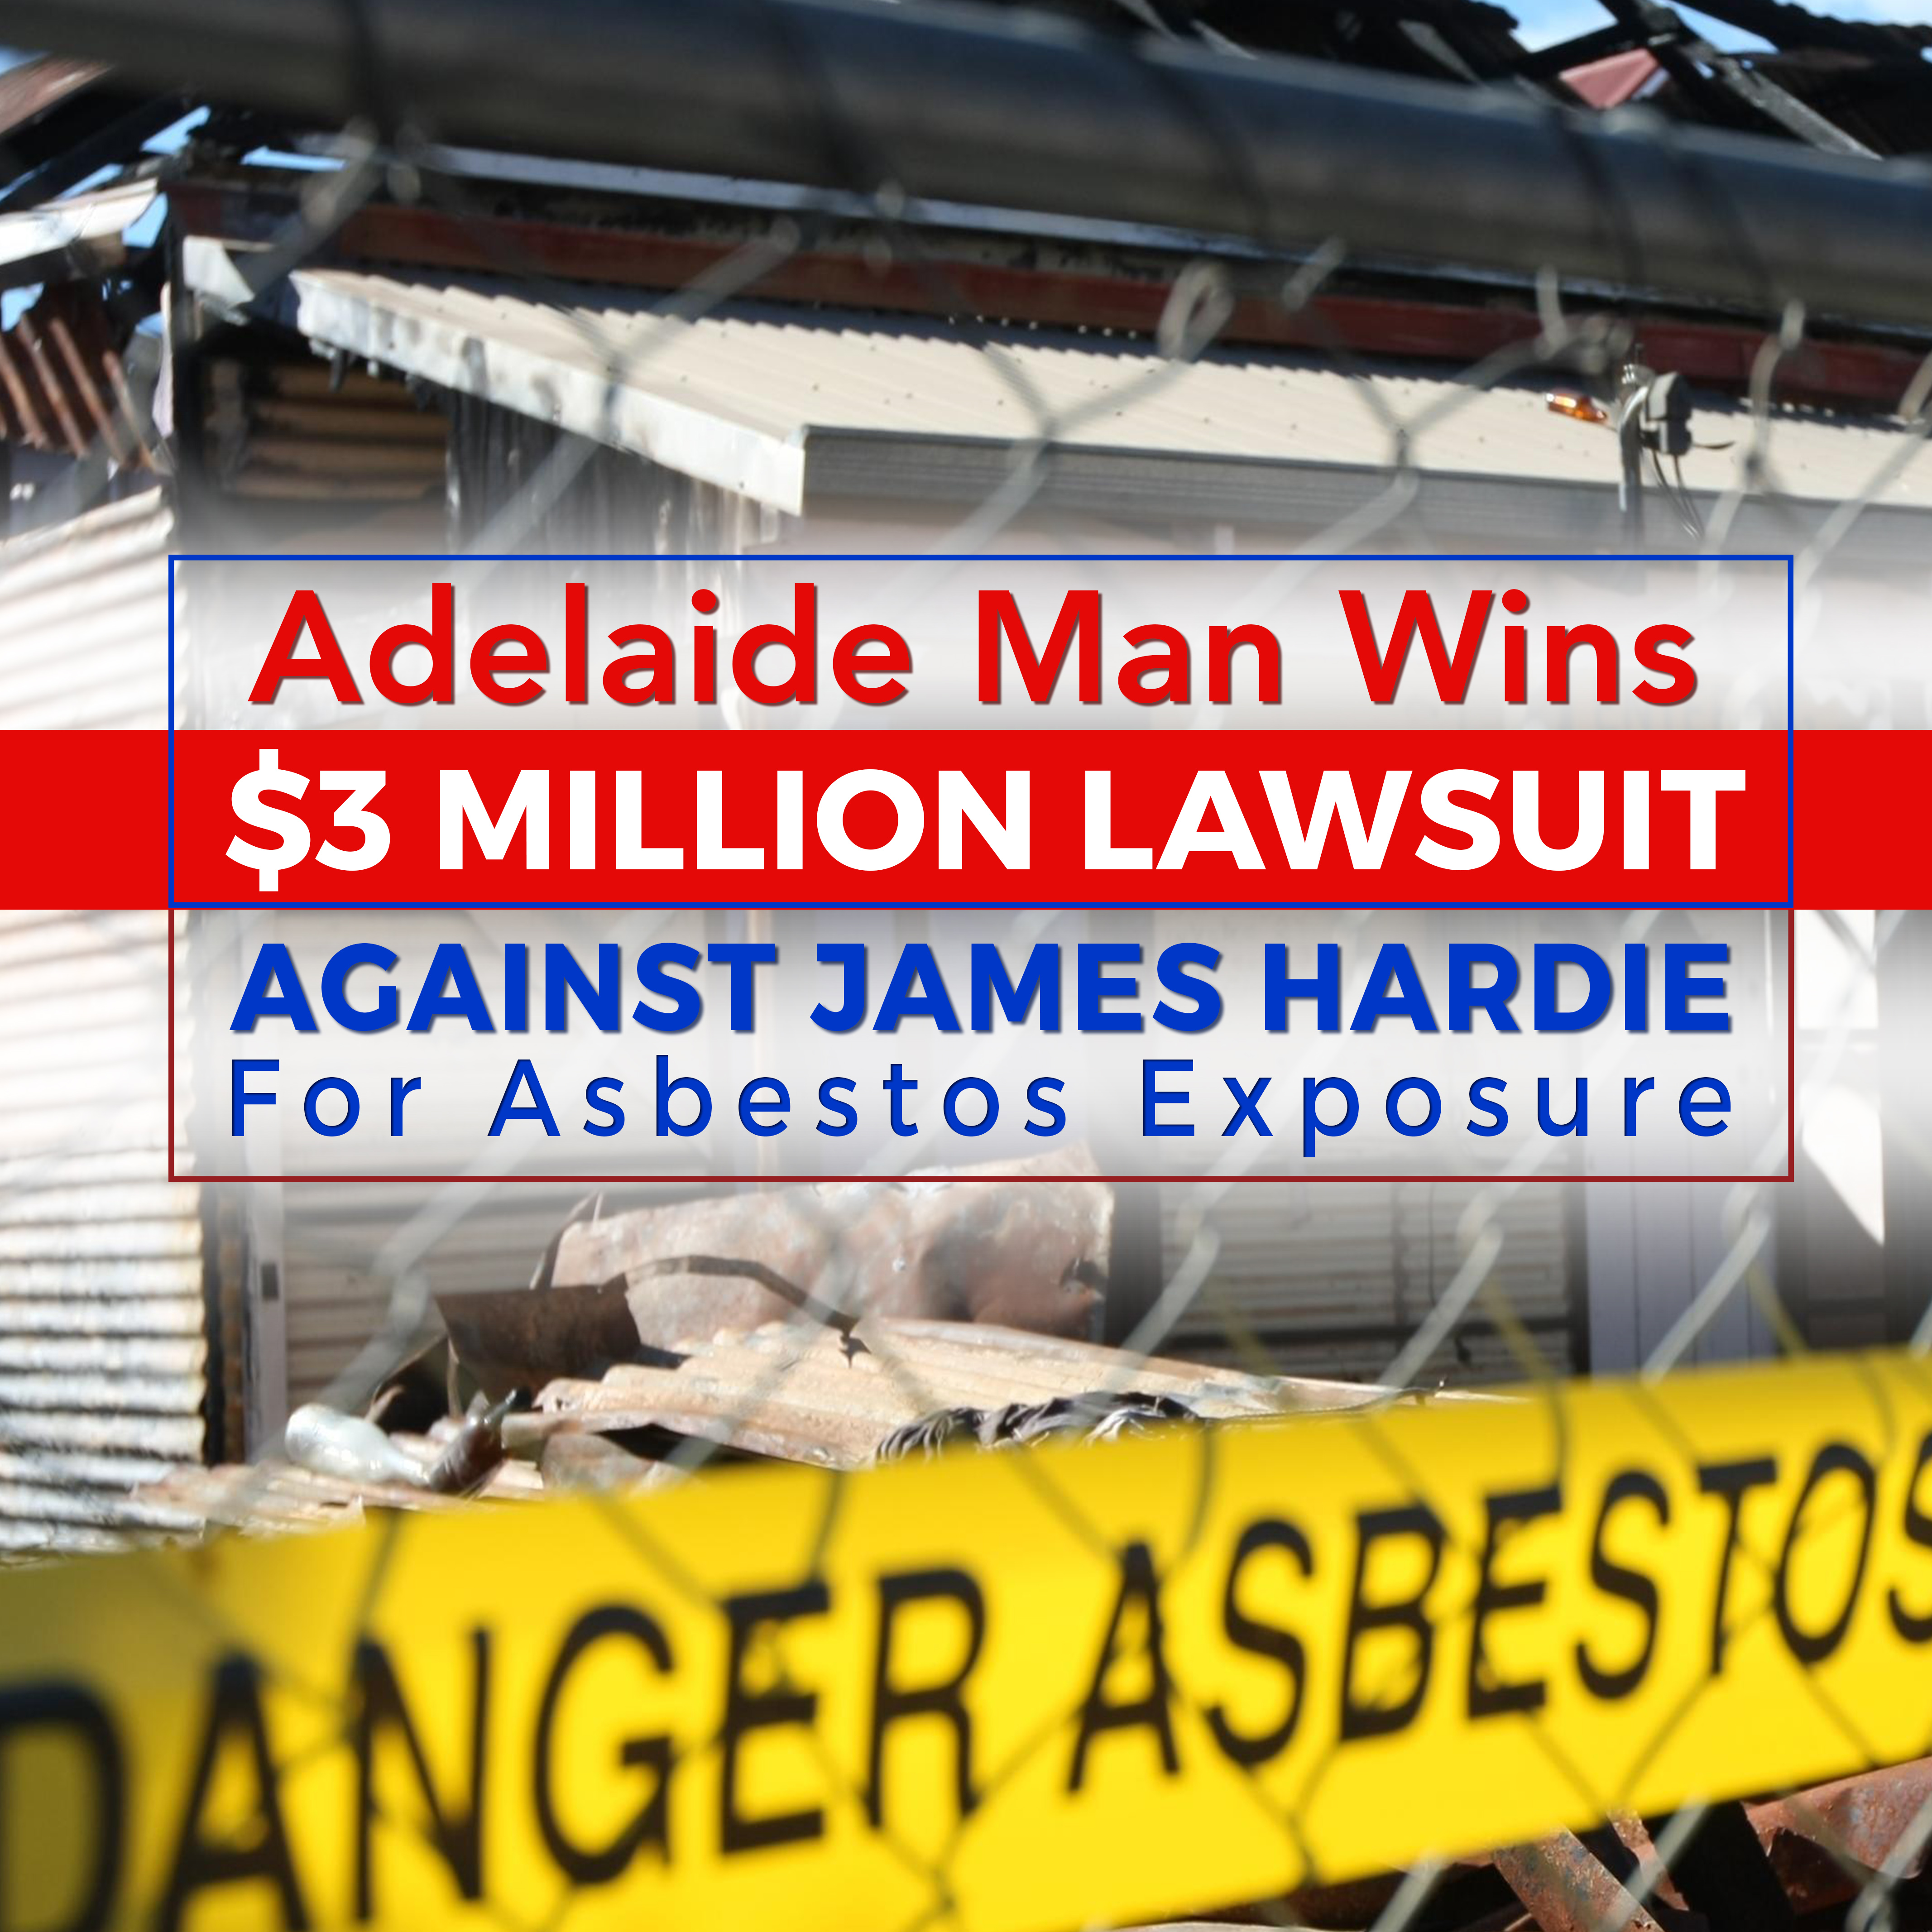 Adelaide Man Wins $3 Million Lawsuit Against James Hardie for Asbestos Exposure